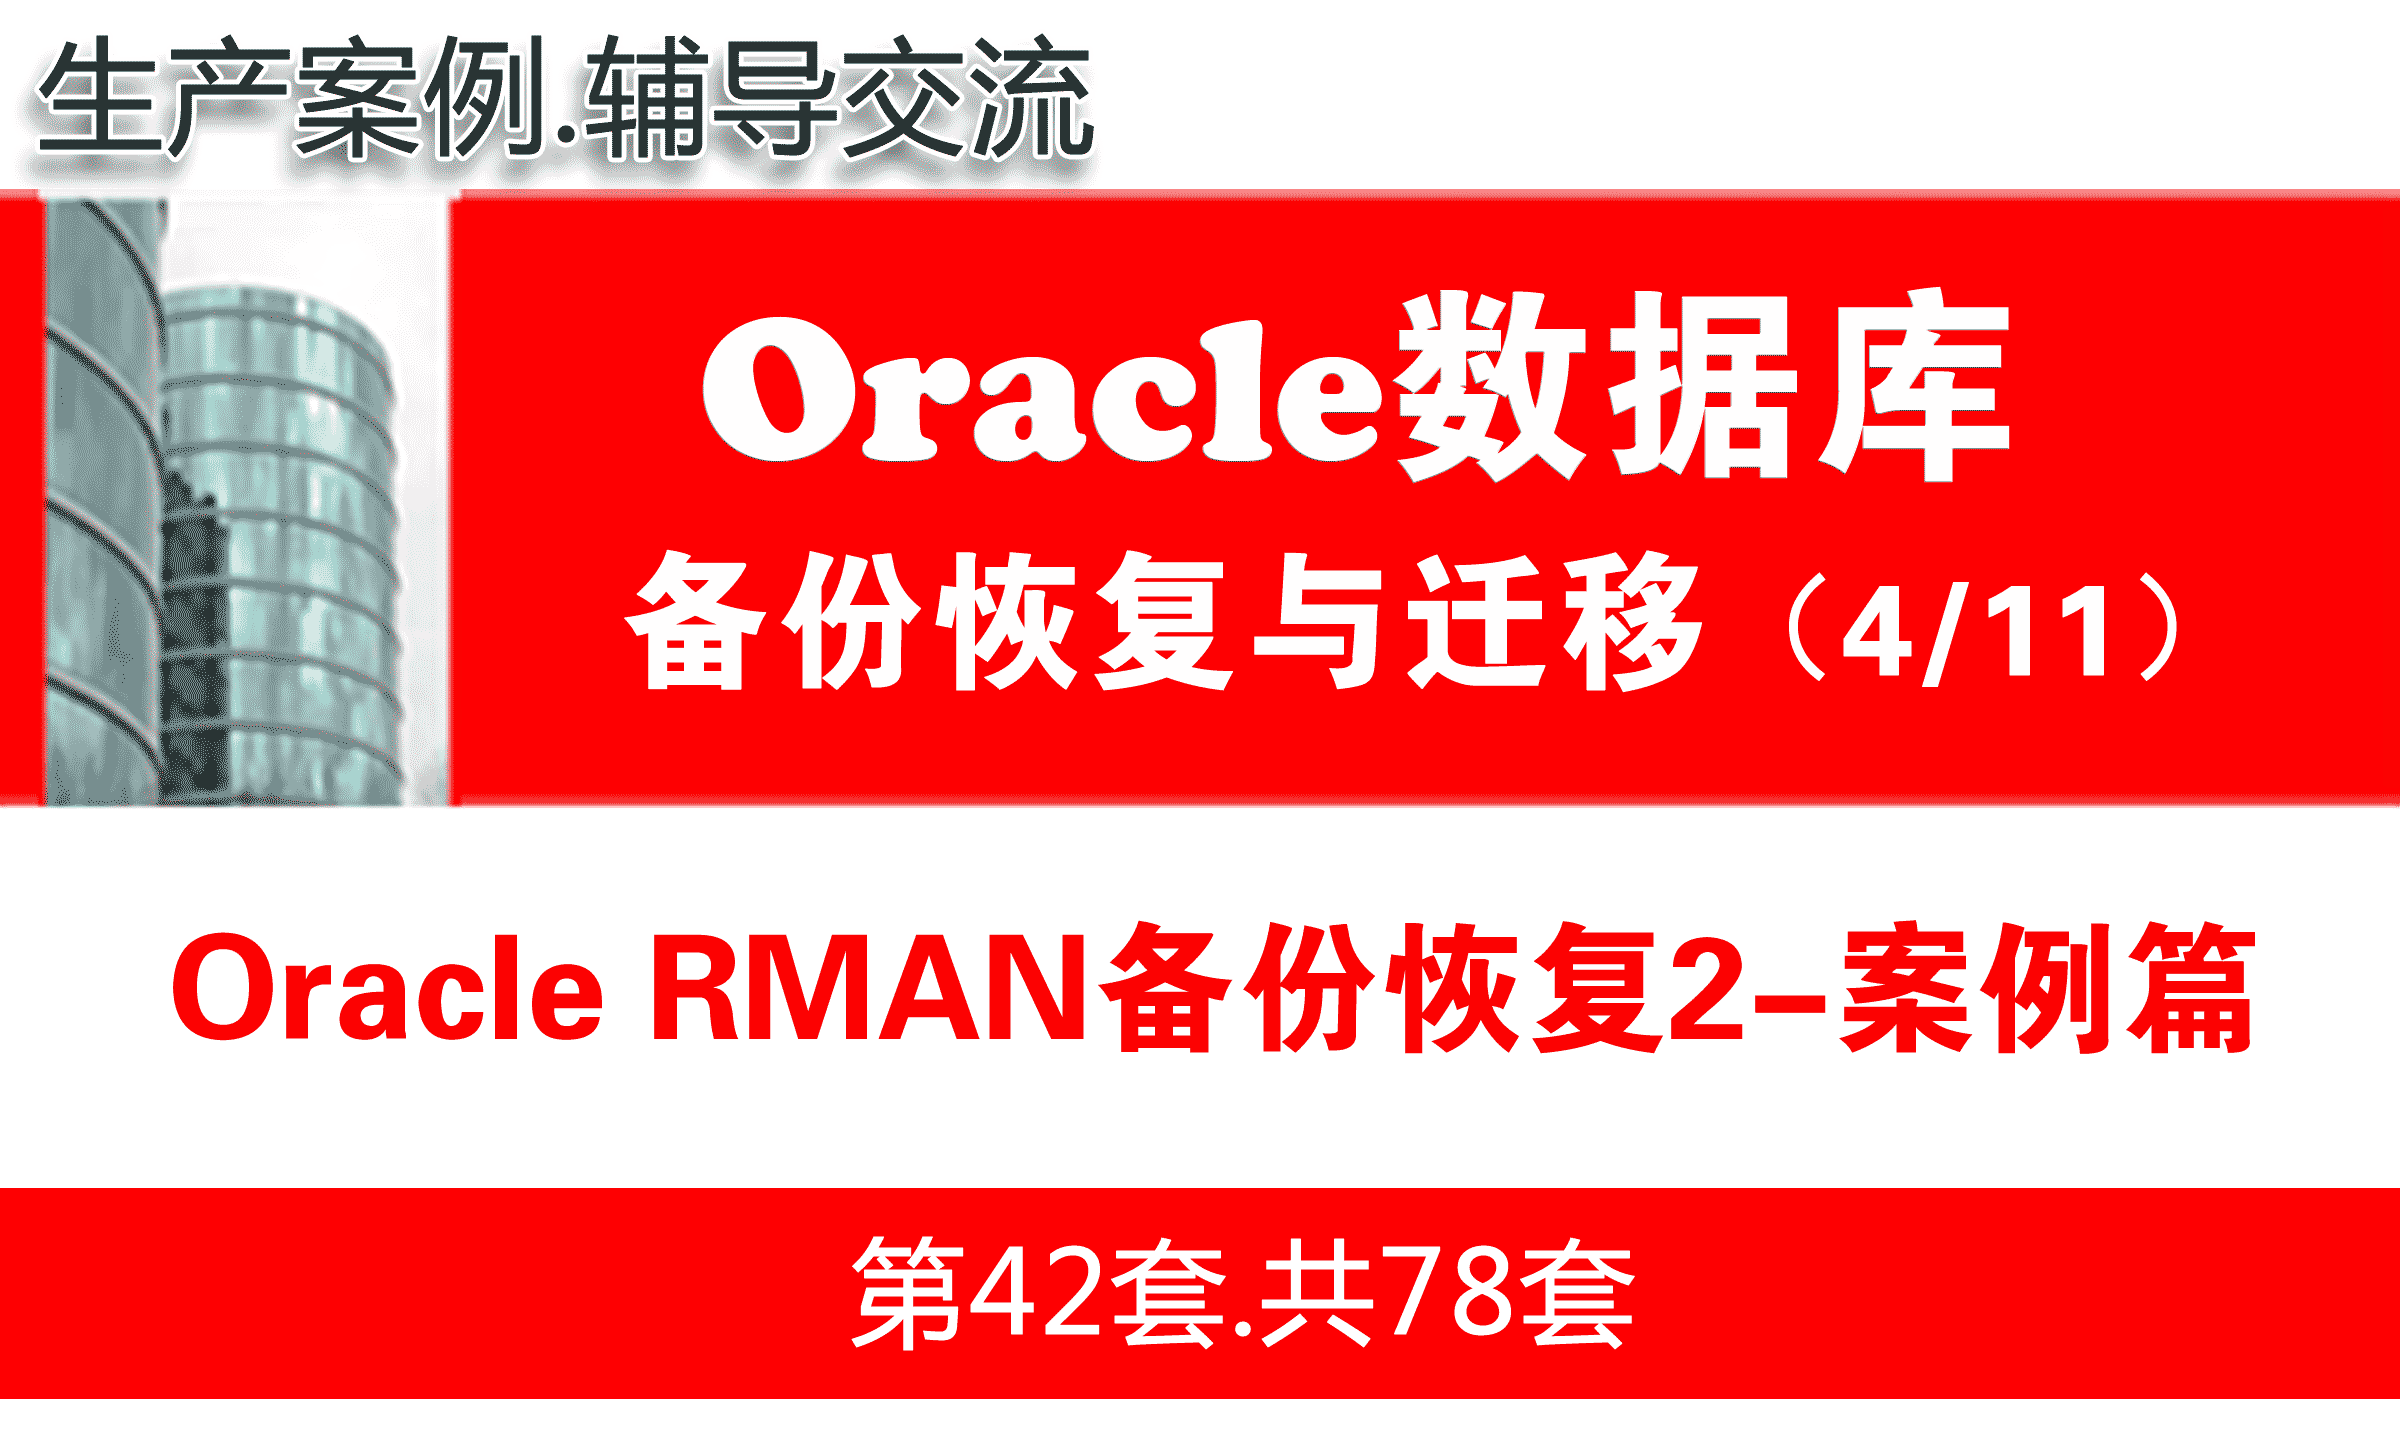 Oracle RMAN备份恢复（案例篇）_Oracle备份恢复与数据迁移教程04